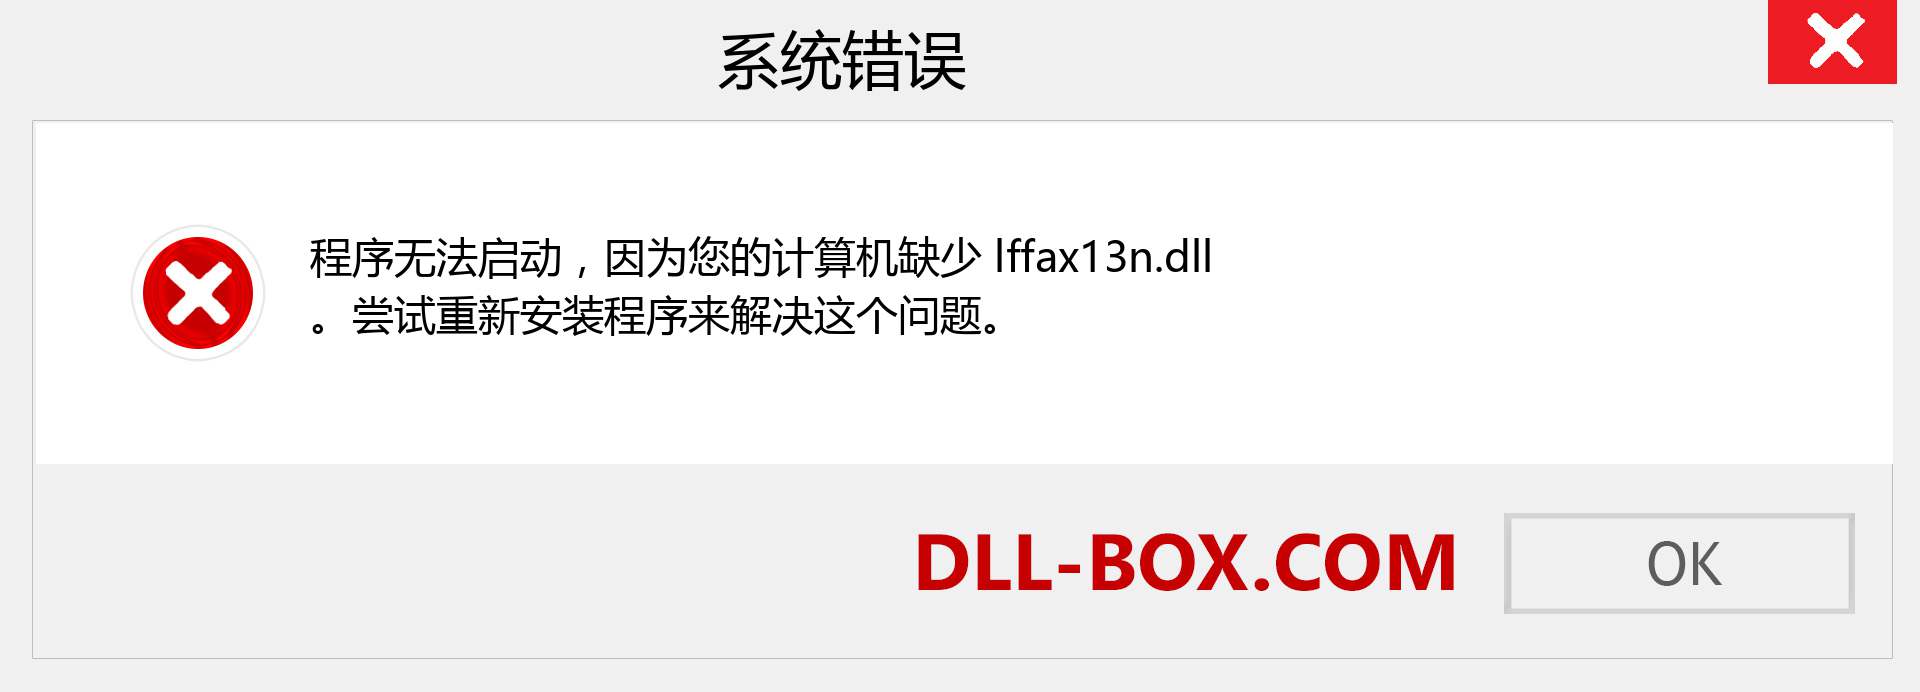 lffax13n.dll 文件丢失？。 适用于 Windows 7、8、10 的下载 - 修复 Windows、照片、图像上的 lffax13n dll 丢失错误